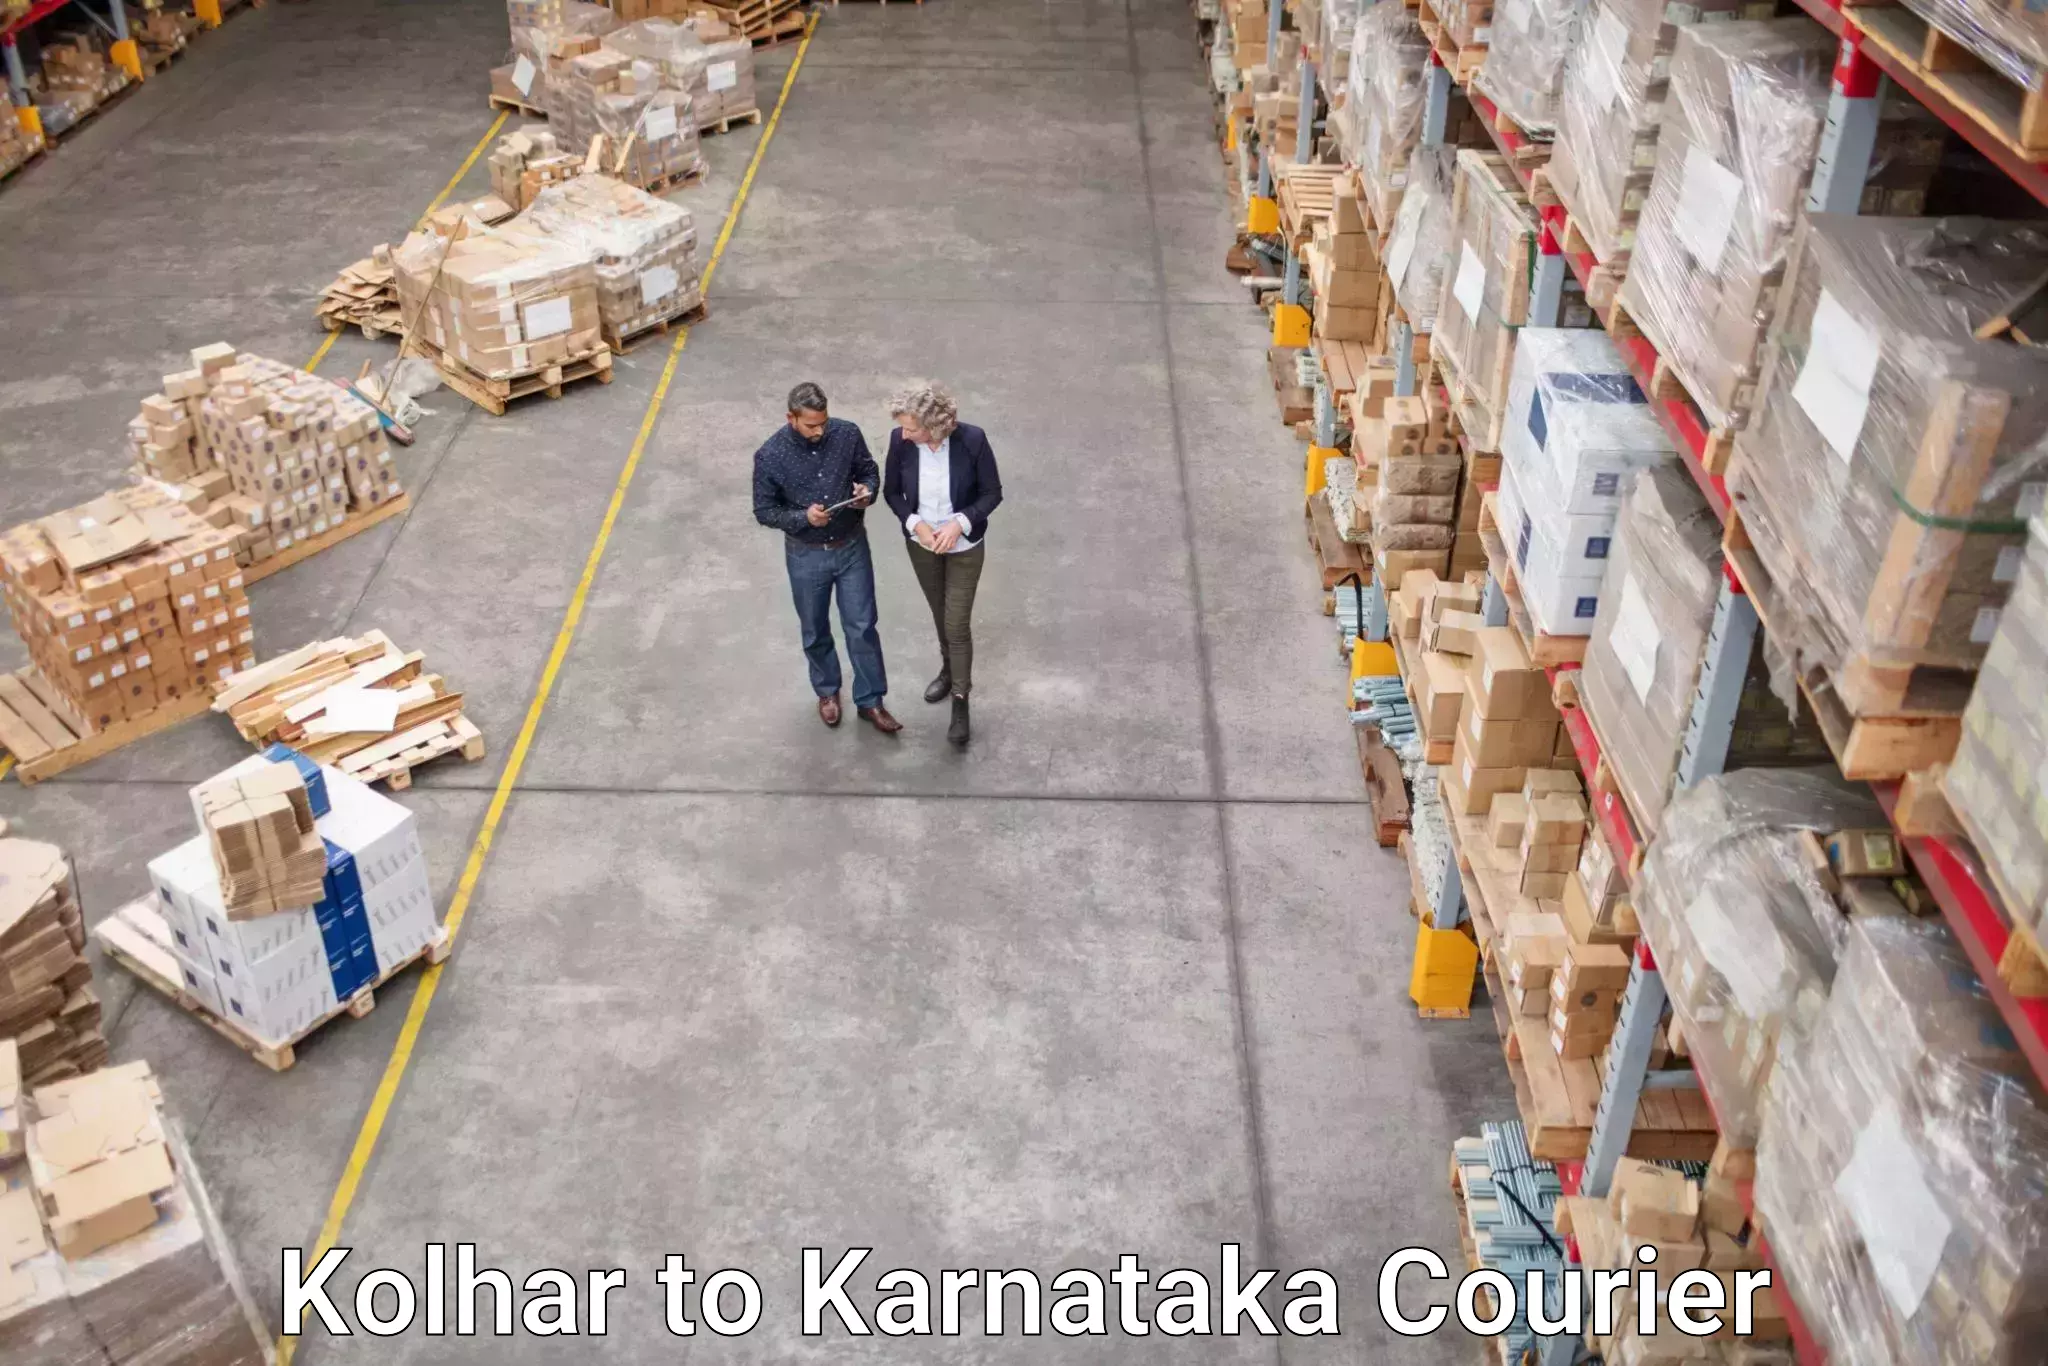 24/7 courier service Kolhar to Kanjarakatte